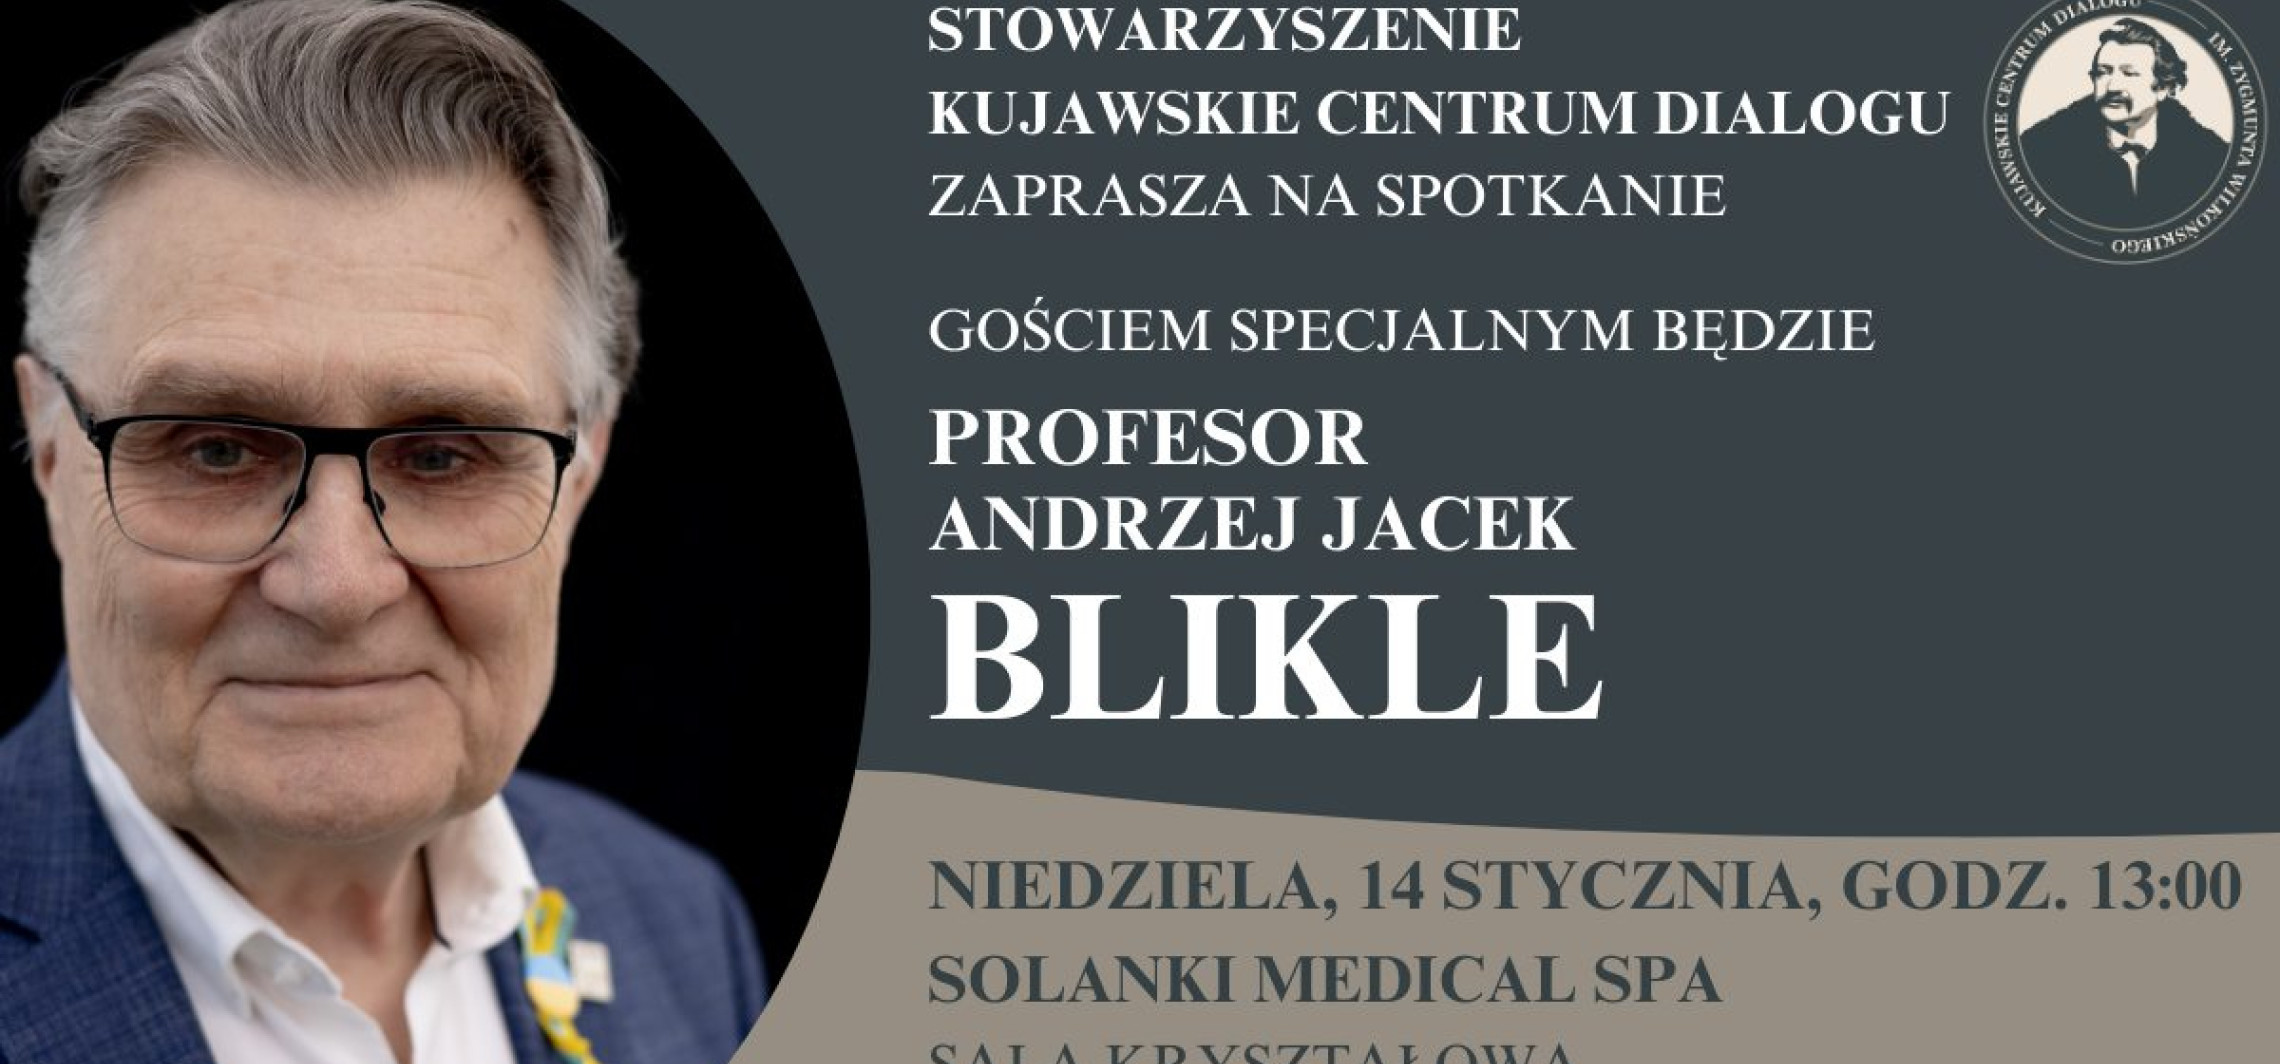 Inowrocław - Na słodko o biznesie. Prof. Blikle w Inowrocławiu